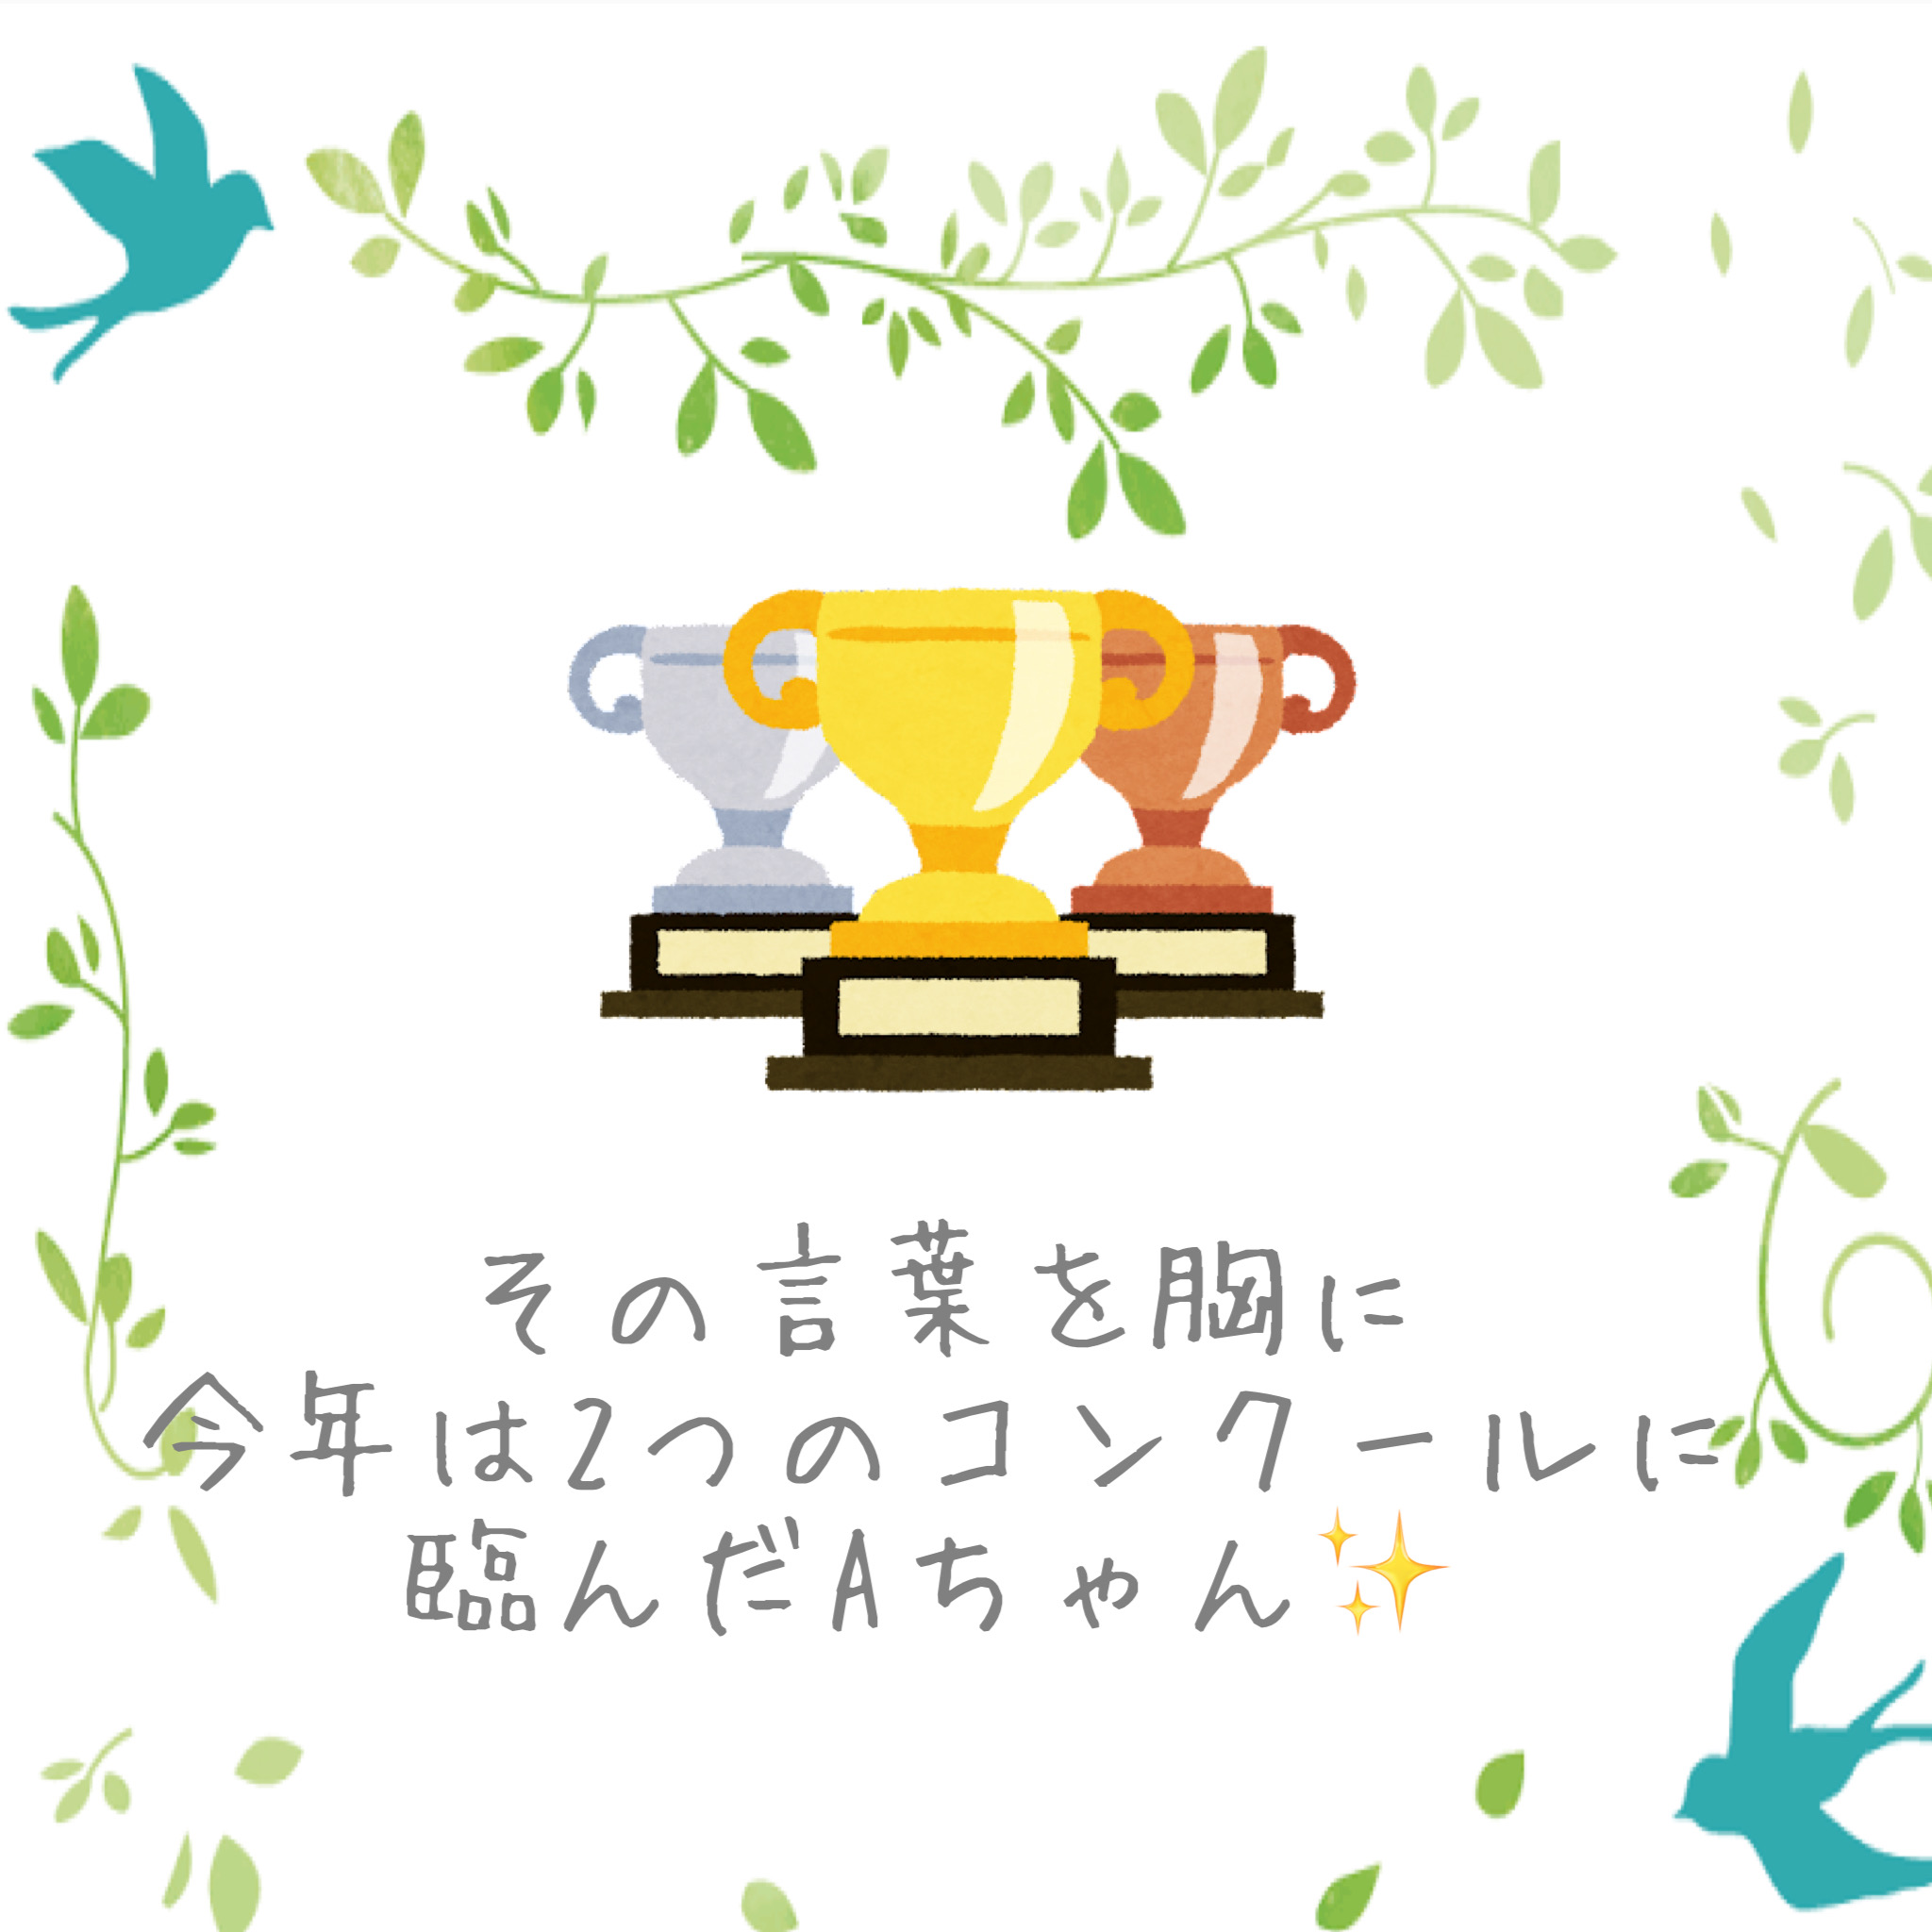 image33.JPG alt="Misuzu Music Houseの生徒さんが自身で立てた目標を達成しました！"